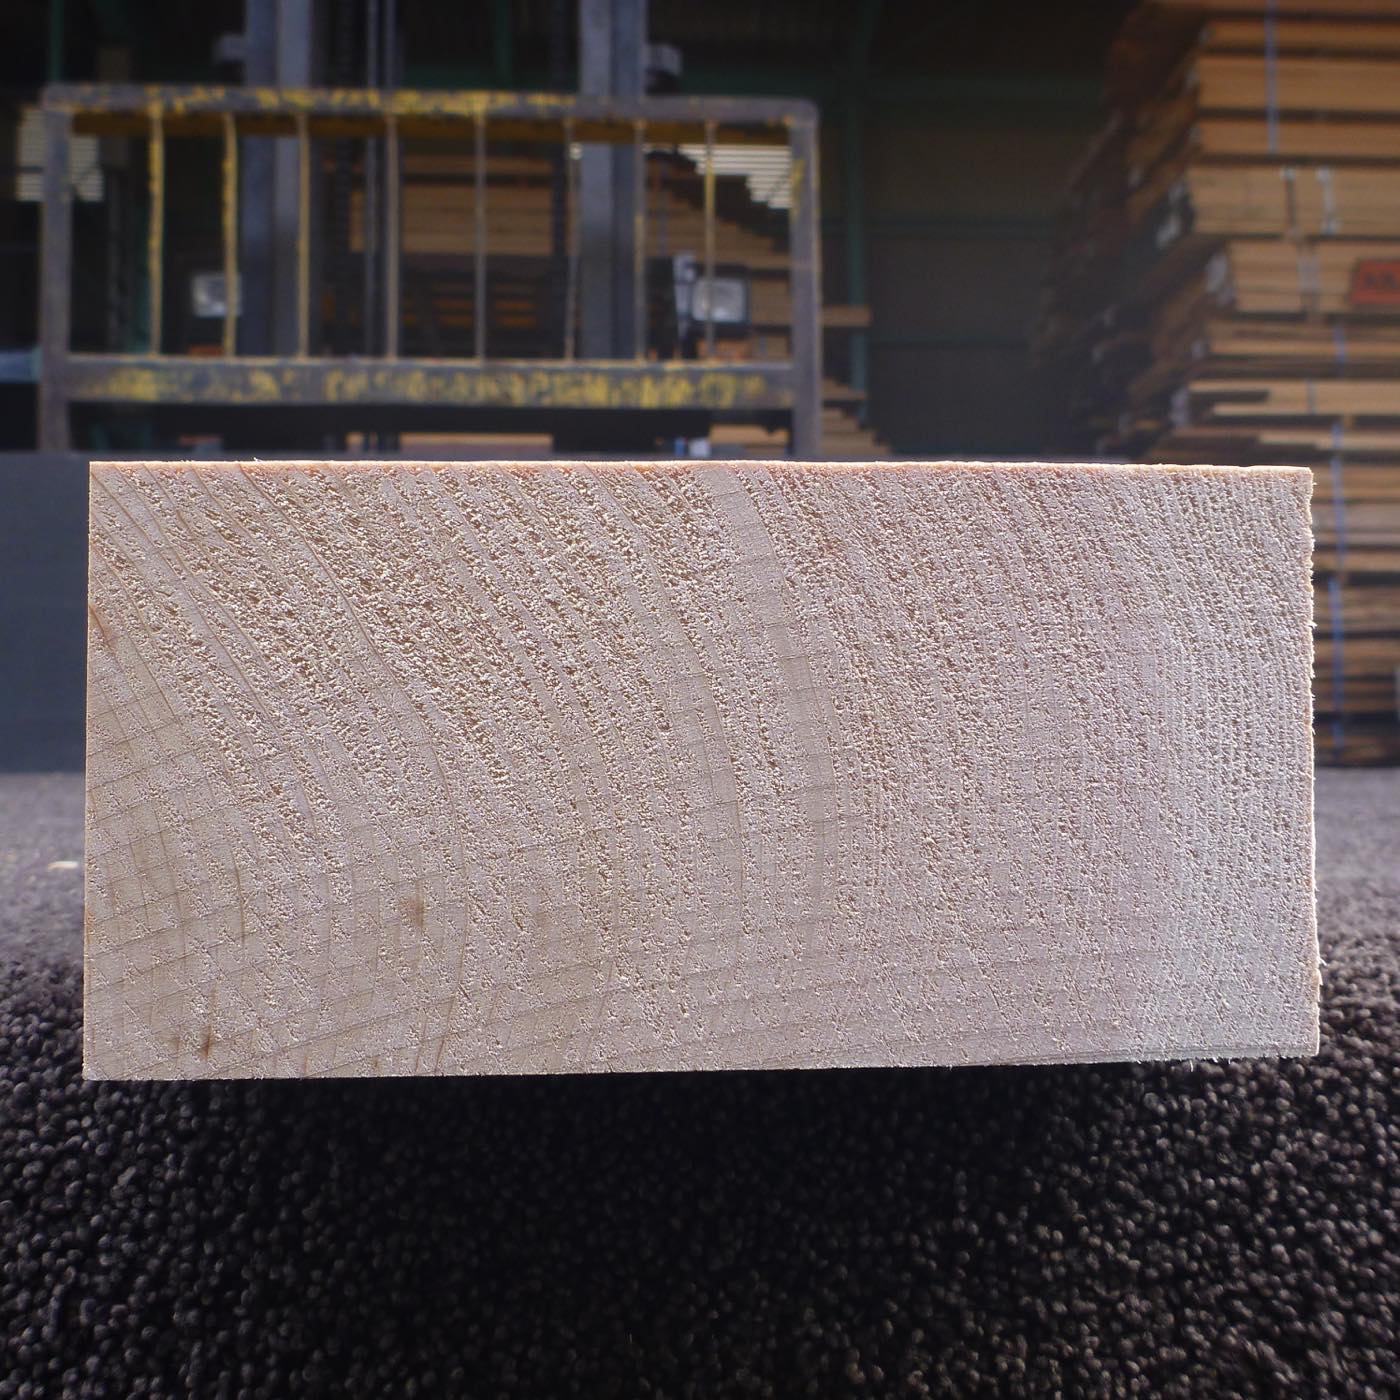 彫刻材 天然木曽檜 柾目盤 ラフ材 L250×T73×W150mm 5B073150 Bグレード 定番商品